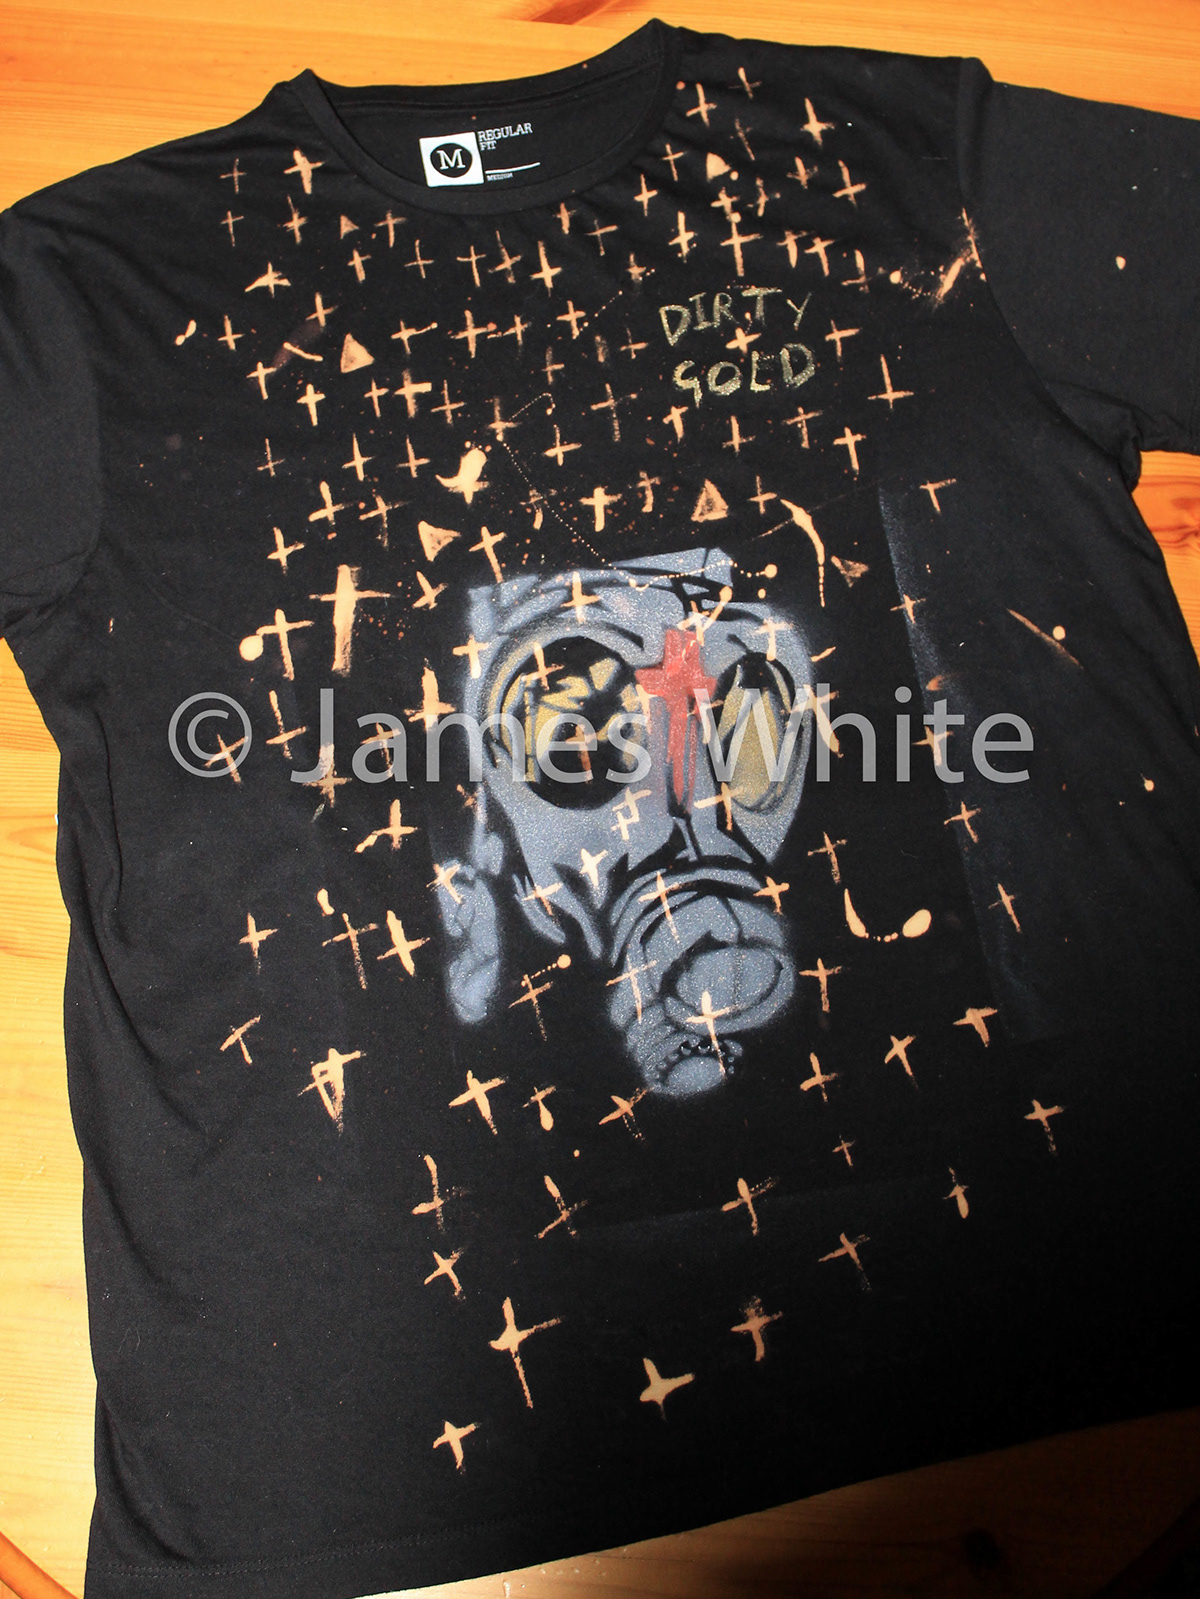 angle haze artist rap Album musician surface design Printing dirty gold t-shirt fine concert Street art